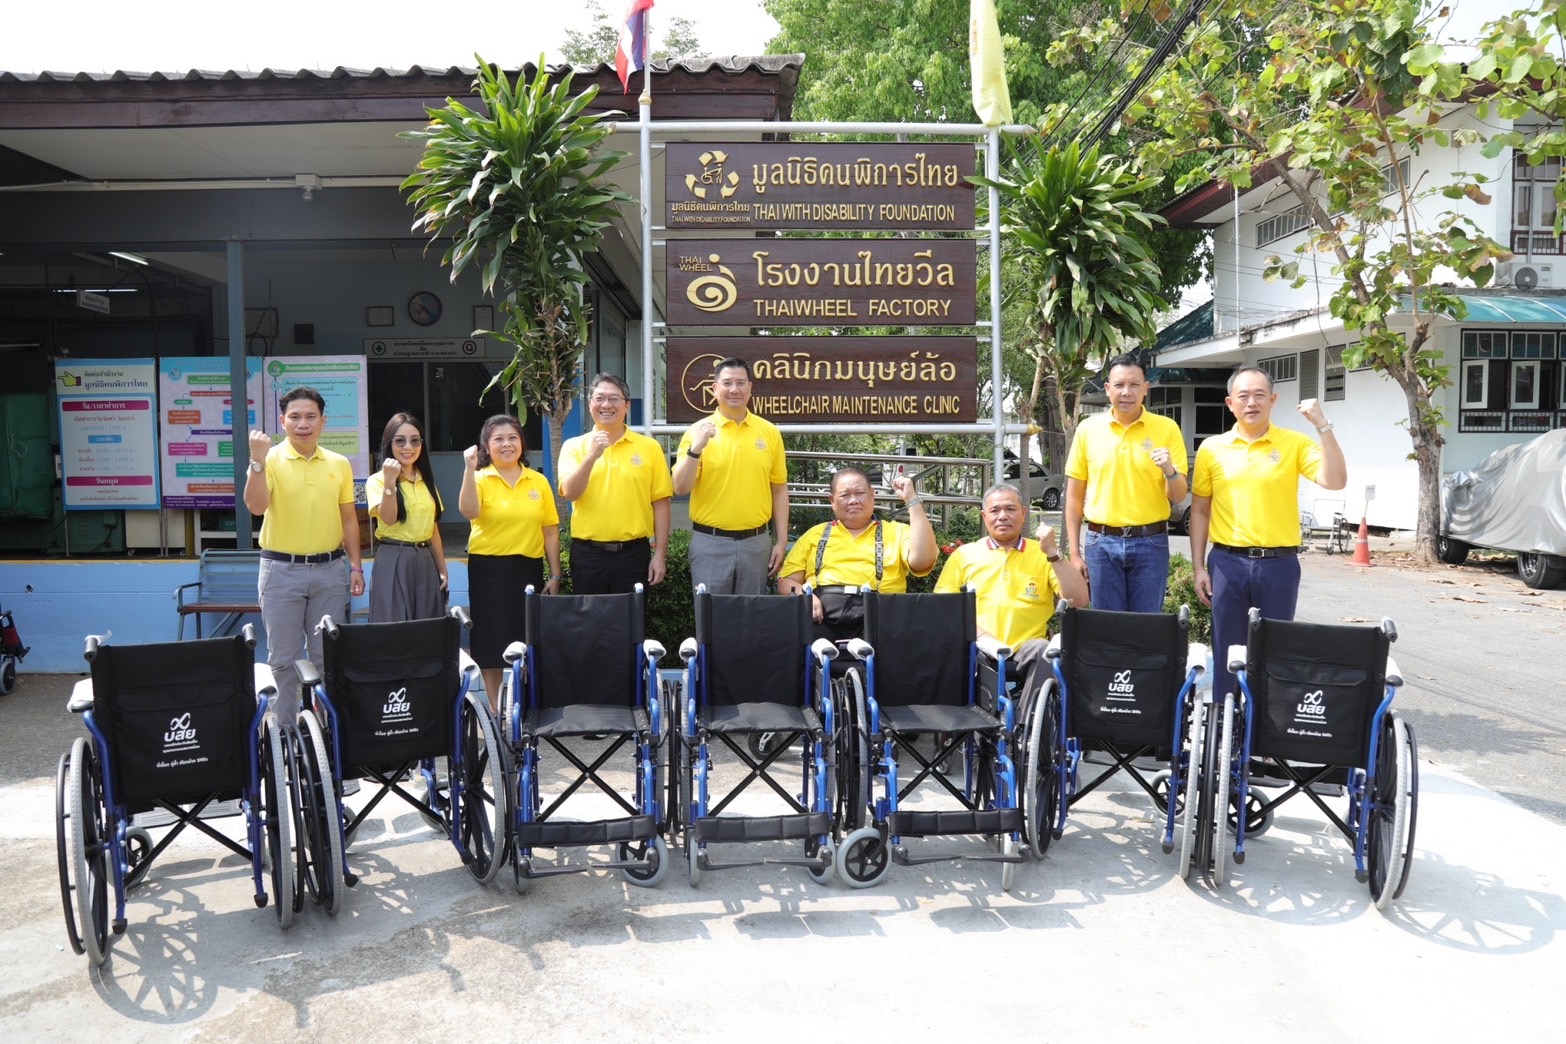 อุดรธานี-จัดกิจกรรม “บสย. ร่วมใจ ทำดี เพื่อสังคม” ครั้งที่ 1 มอบวีลแชร์ ฝีมือคนพิการ มูลนิธิคนพิการไทย